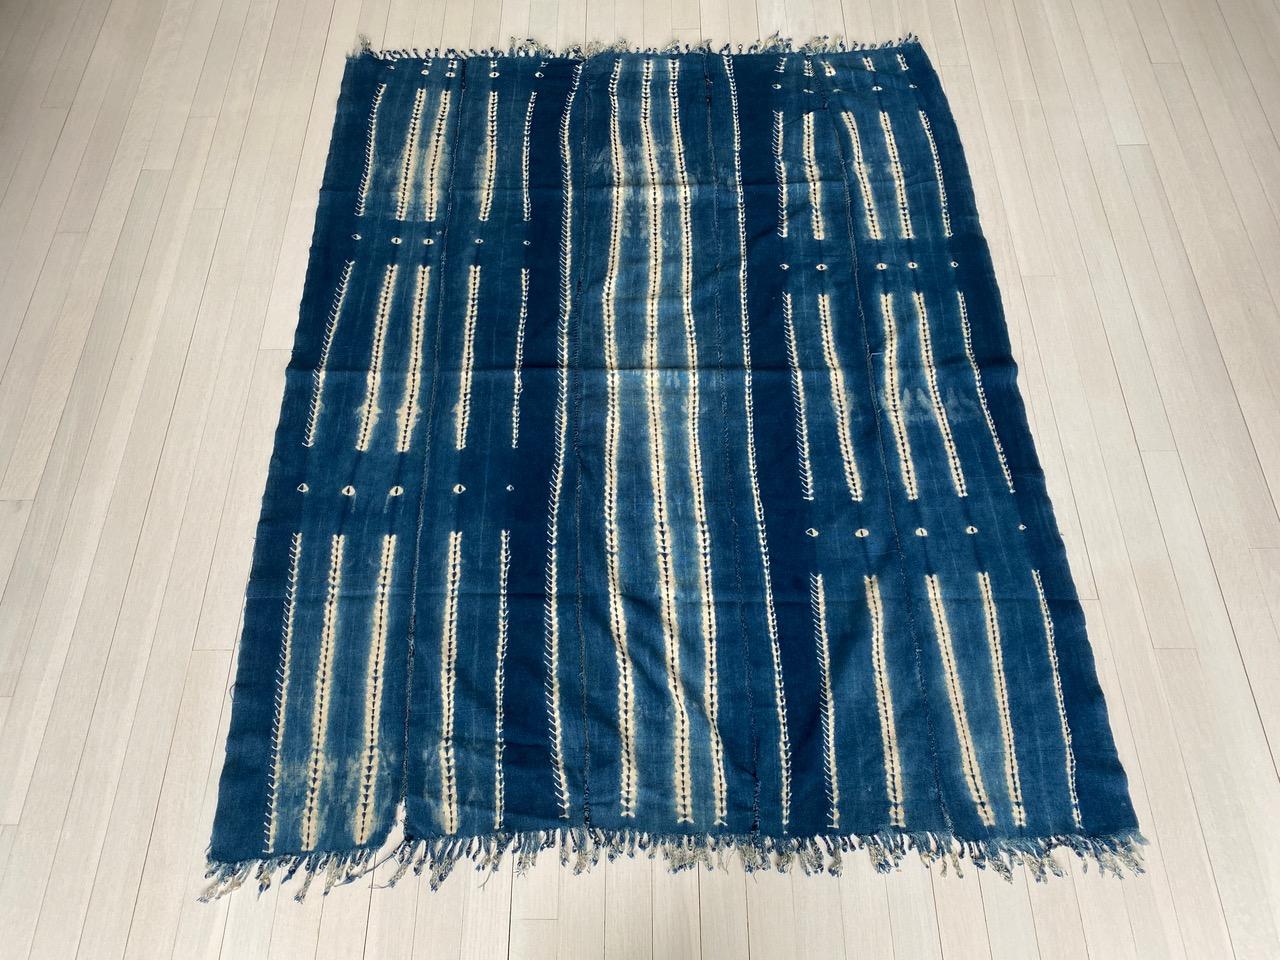 Afrikanisches indigoblaues Mali-Textil, um 1950. Handgewebte, pflanzlich gefärbte Baumwolle. Wir wählten nur das Beste aus.

Dieses weiche Textil wurde im Geiste von Wabi-Sabi beschafft, einer japanischen Philosophie, die besagt, dass Schönheit in